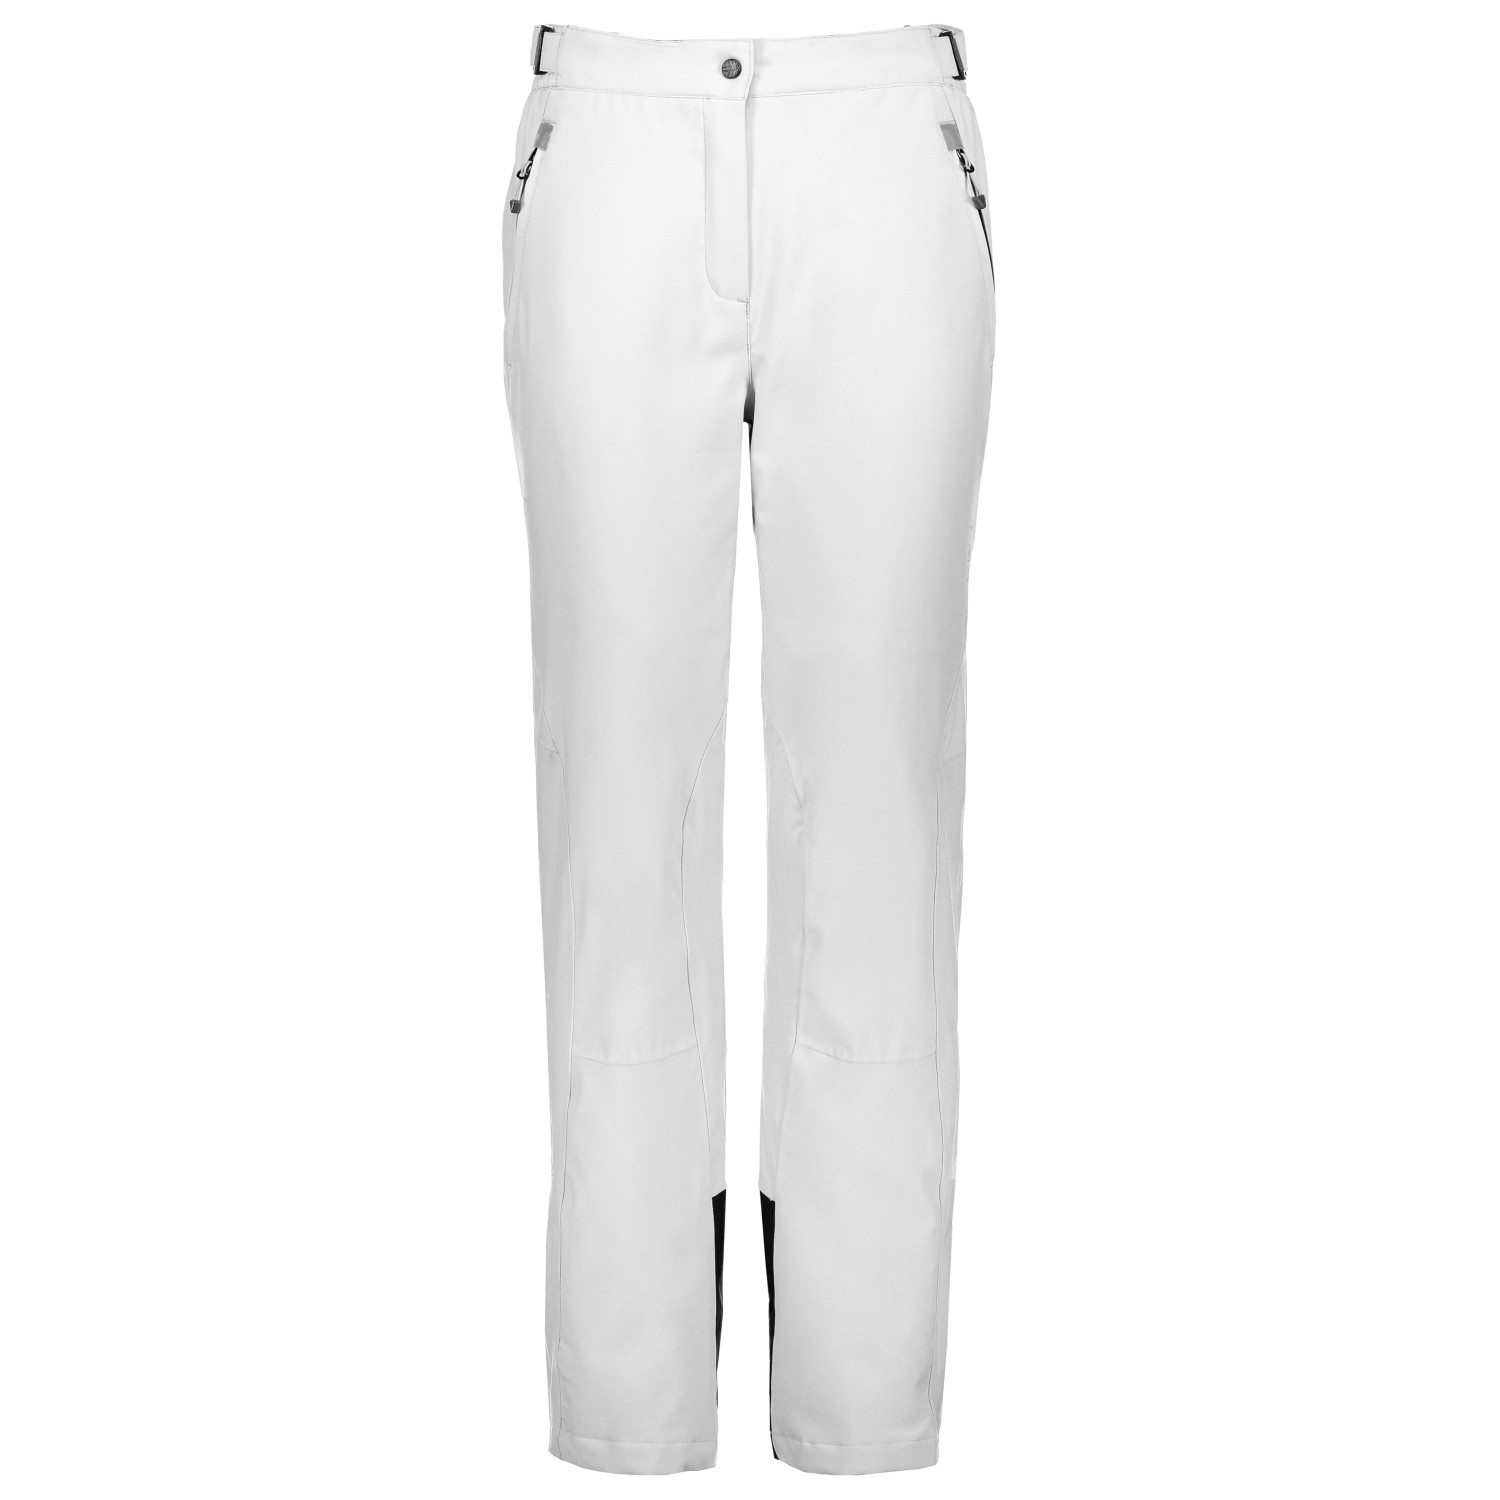 Лыжные штаны Cmp Women's Pant Stretch Polyester 3W18596N, цвет Bianco